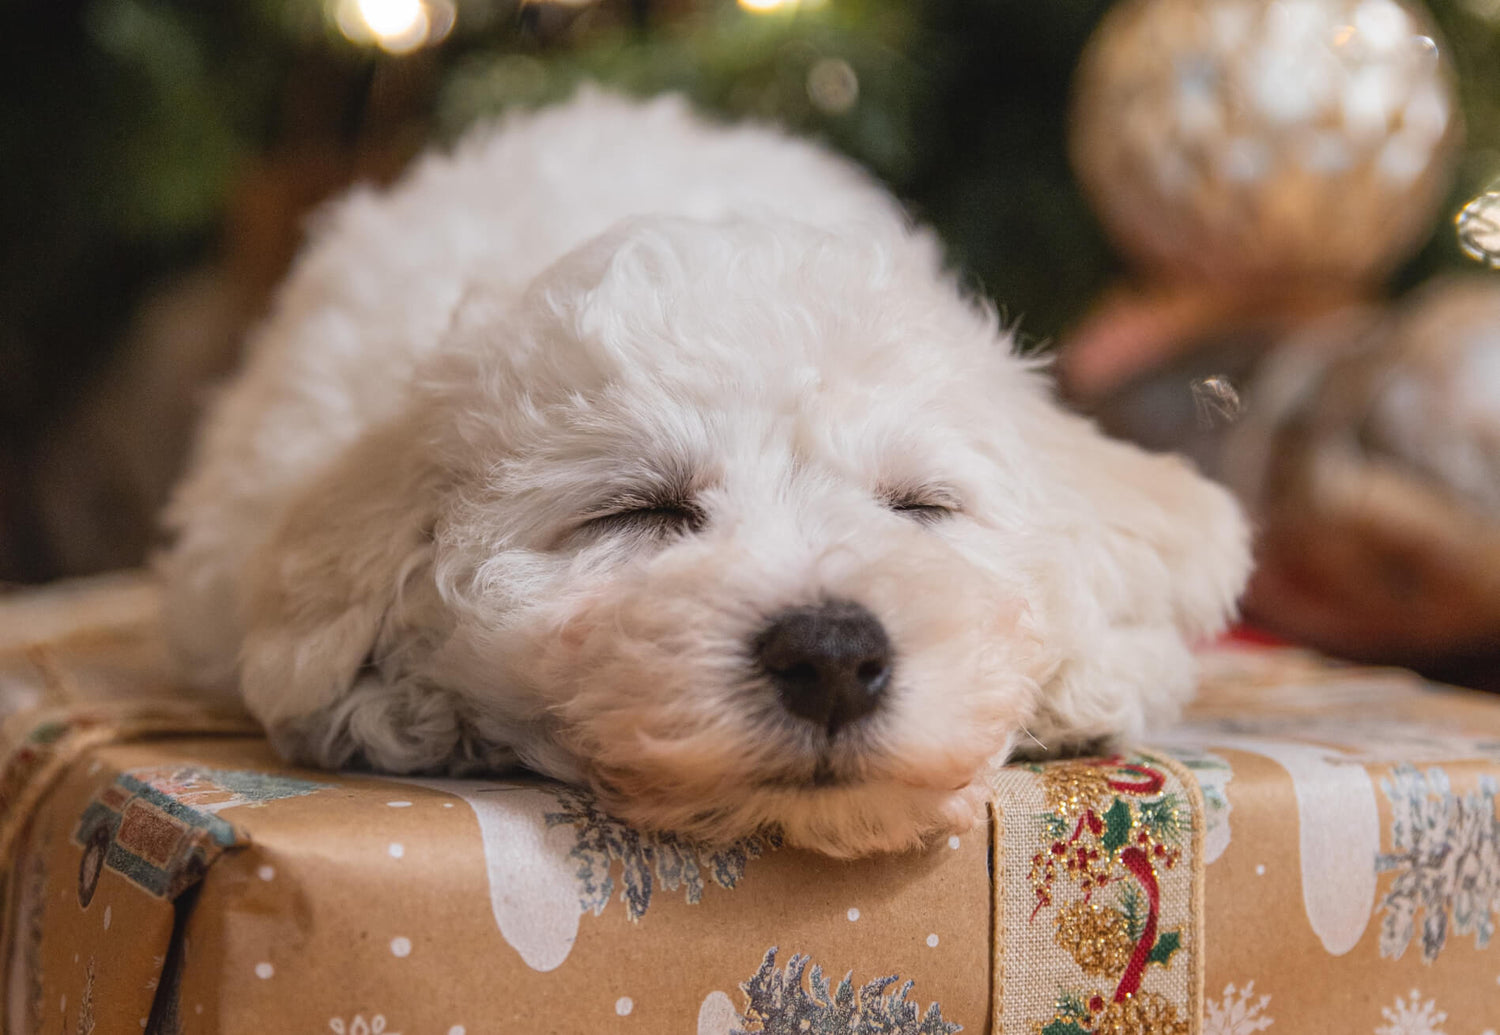 Ein kleiner wuscheliger Hund liegt auf einem verpackten Geschenk und schläft.